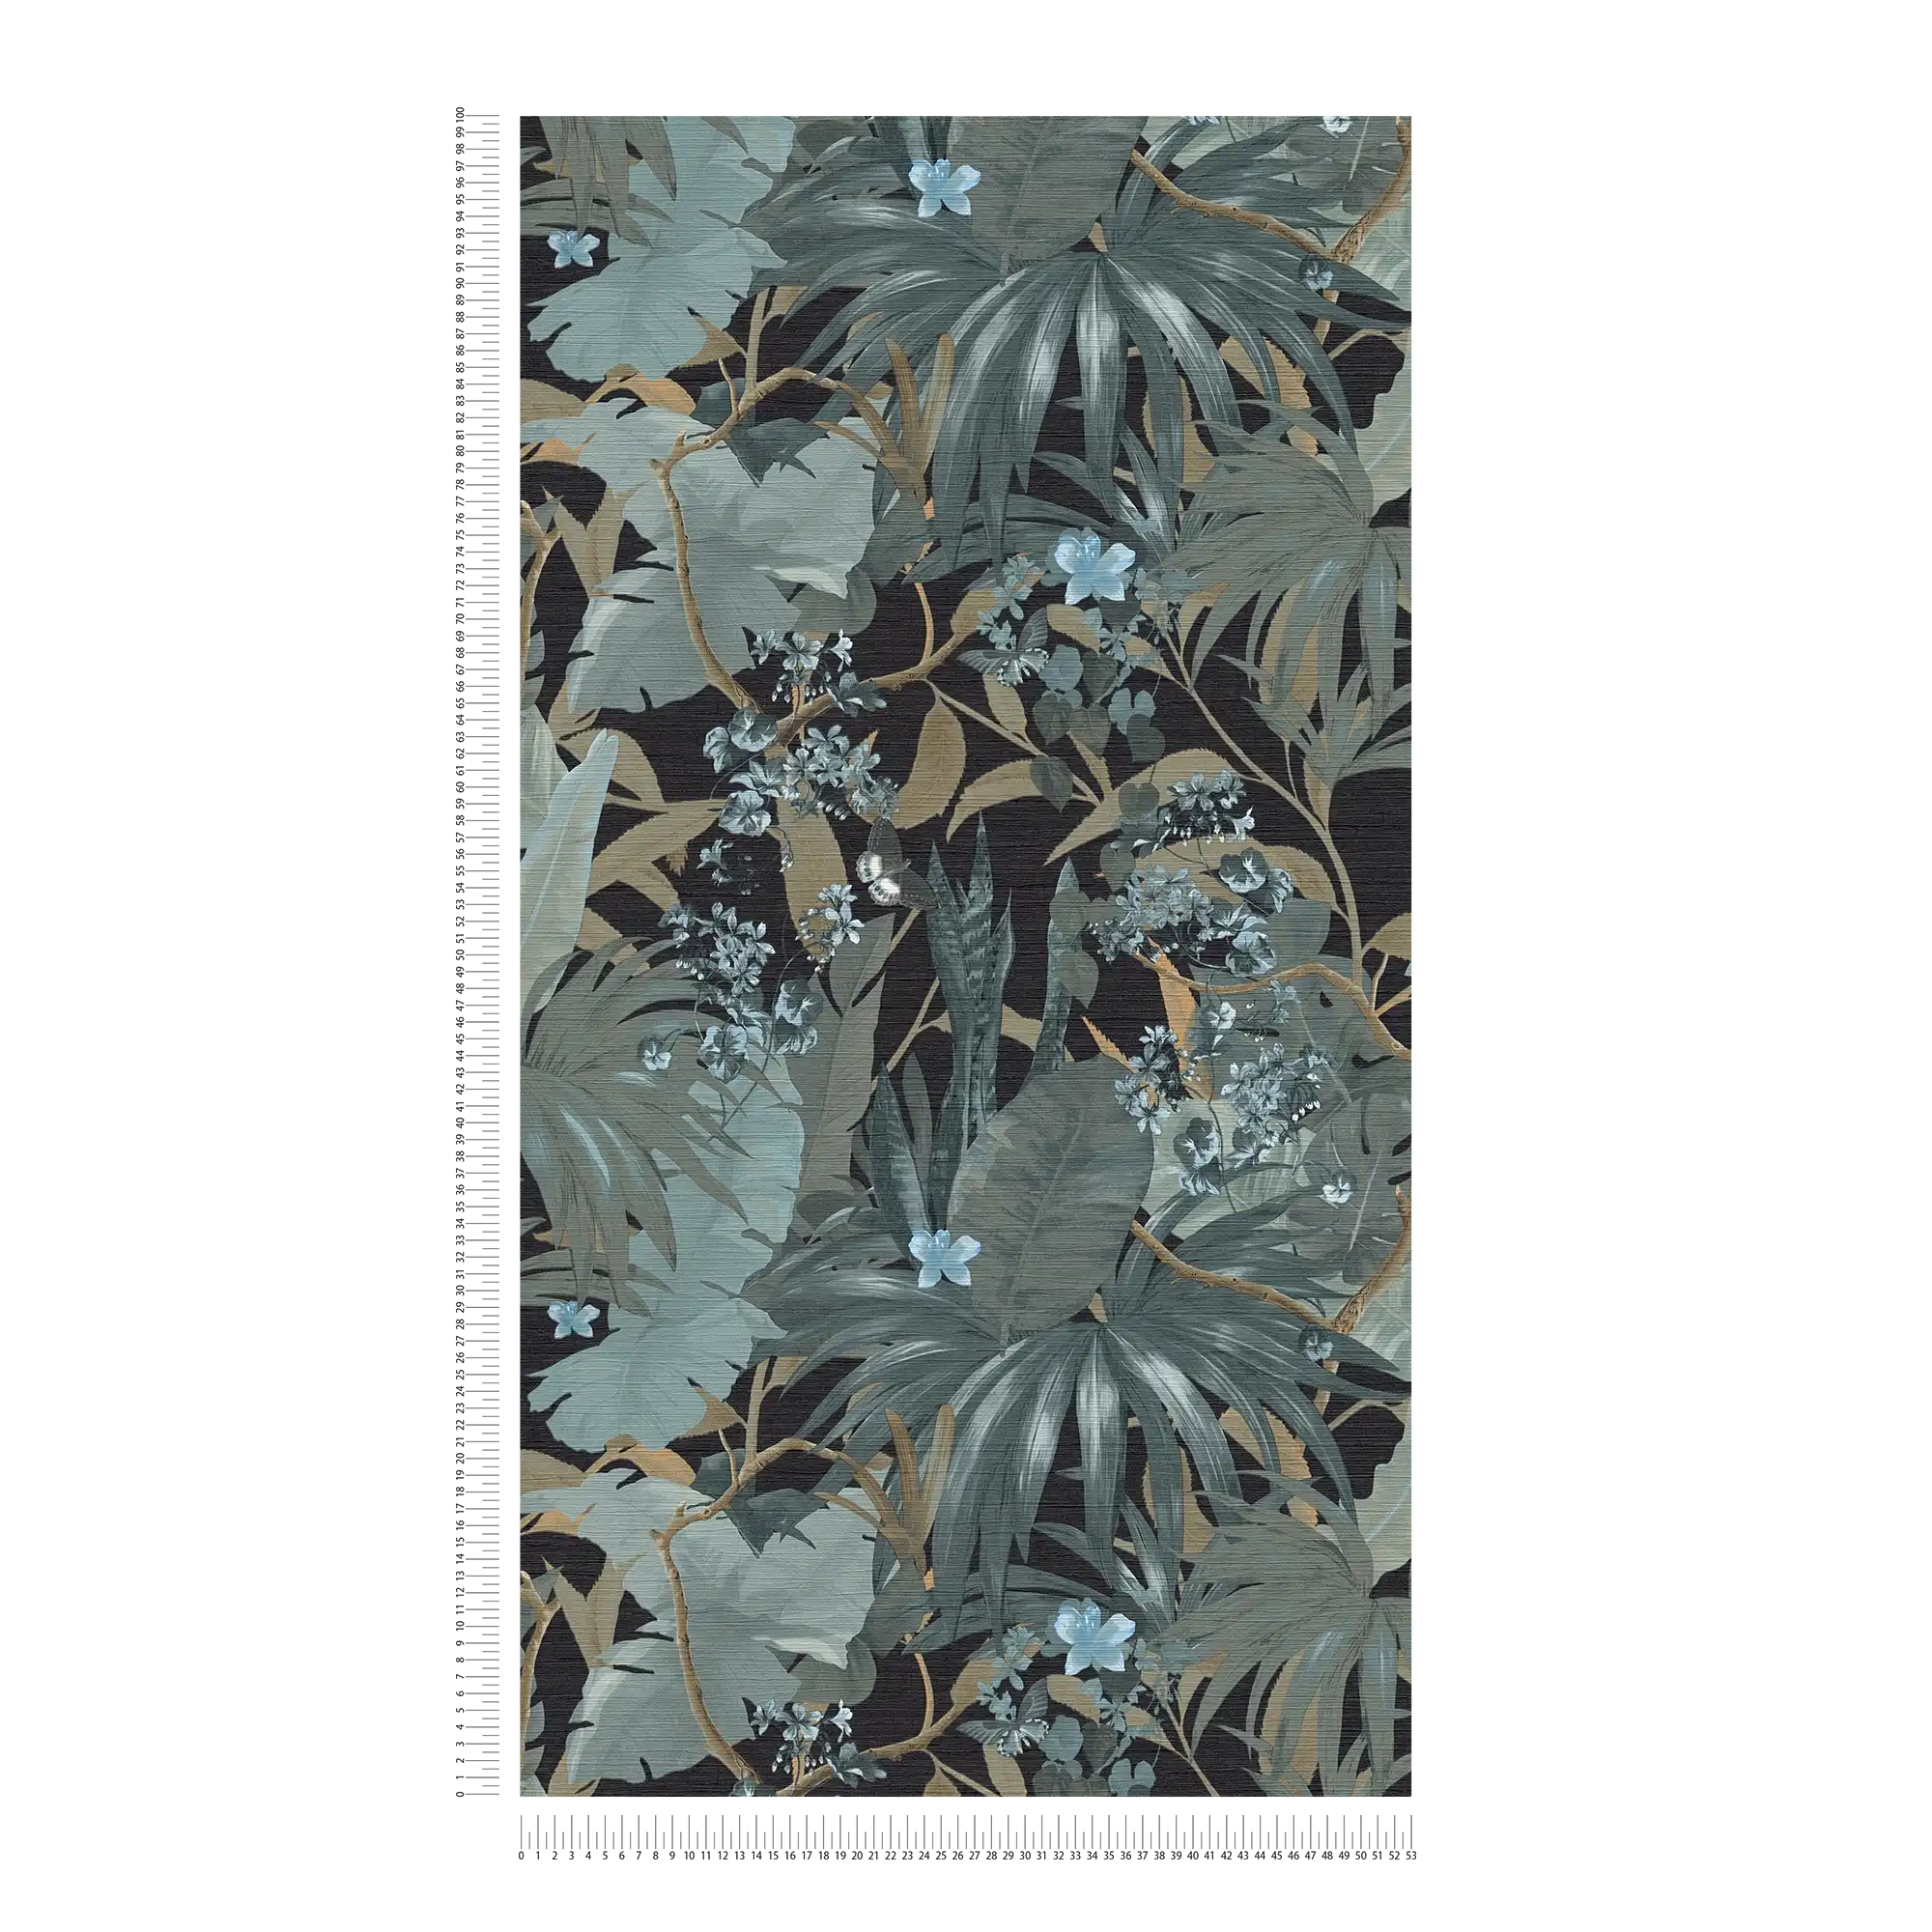             behang jungle design met bladmotief - grijs, groen
        